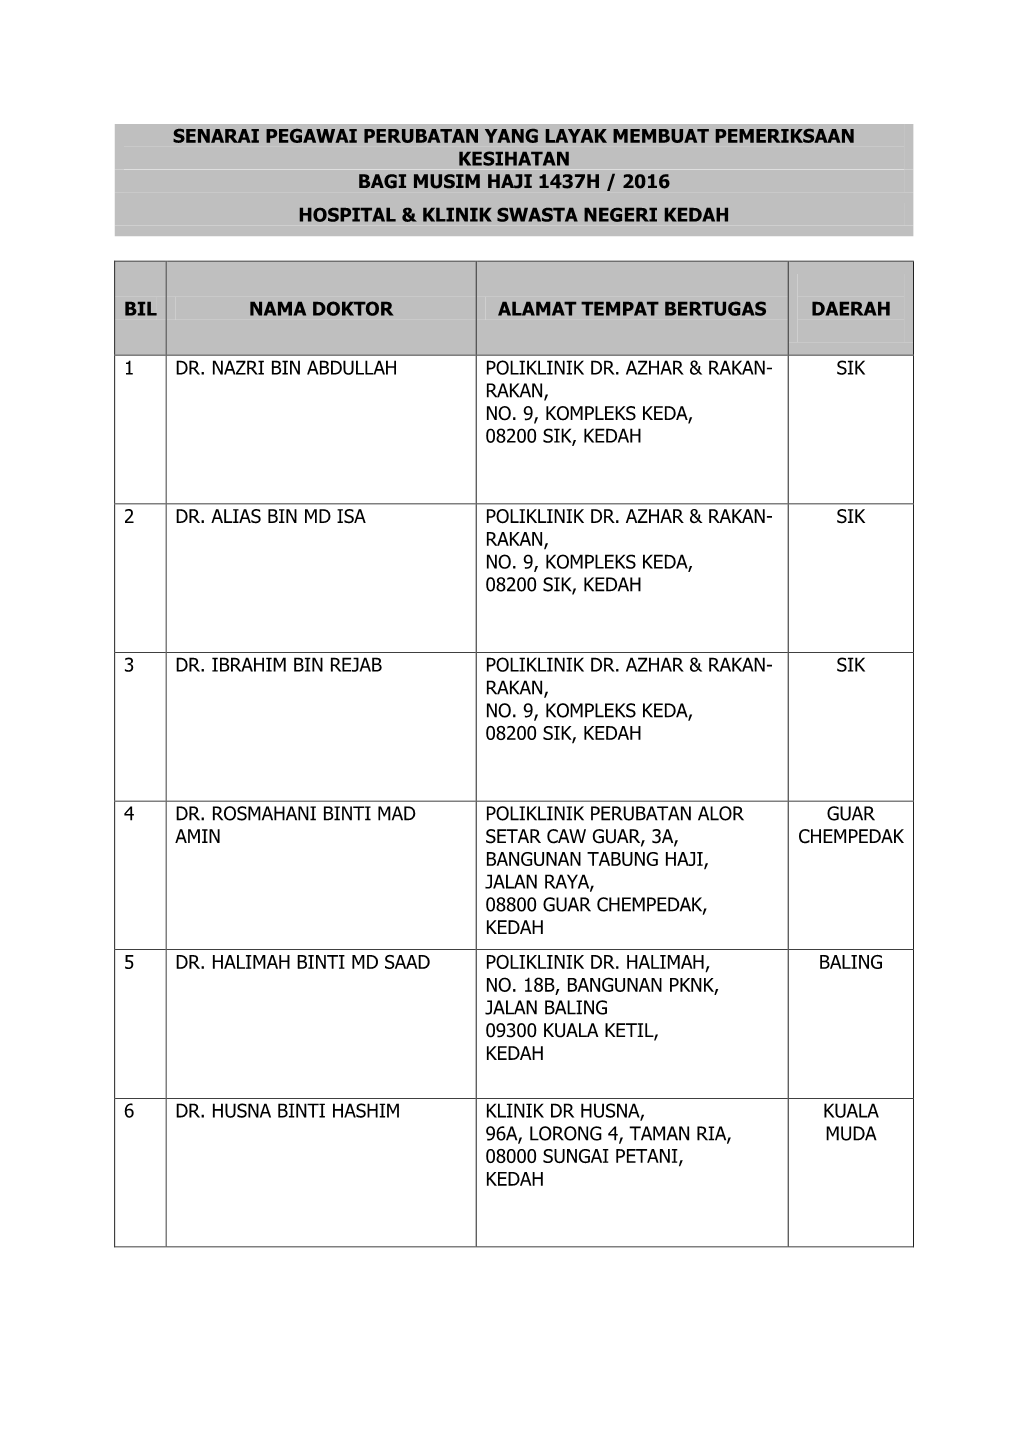 Senarai Pegawai Perubatan Yang Layak Membuat Pemeriksaan Kesihatan Bagi Musim Haji 1437H / 2016 Hospital & Klinik Swasta